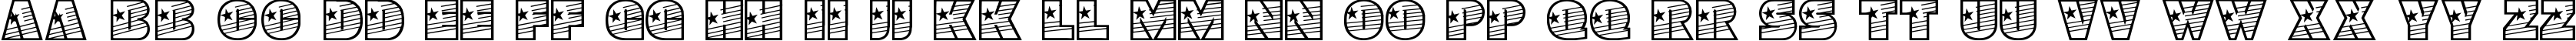 Пример написания английского алфавита шрифтом YoungStar